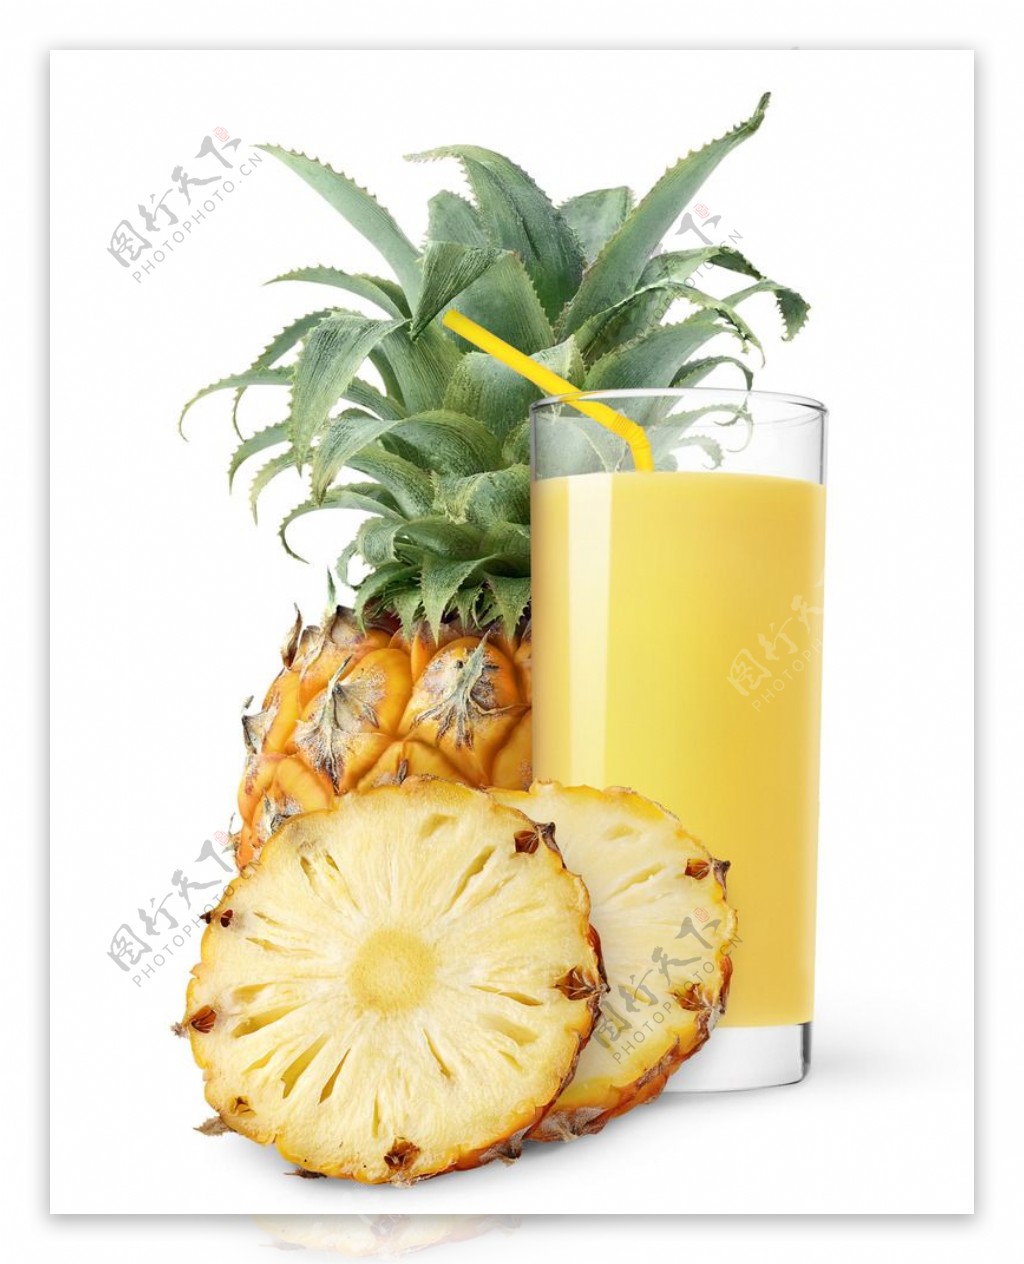 菠萝青瓜汁怎么做_菠萝青瓜汁的做法_CandyLin5301_豆果美食